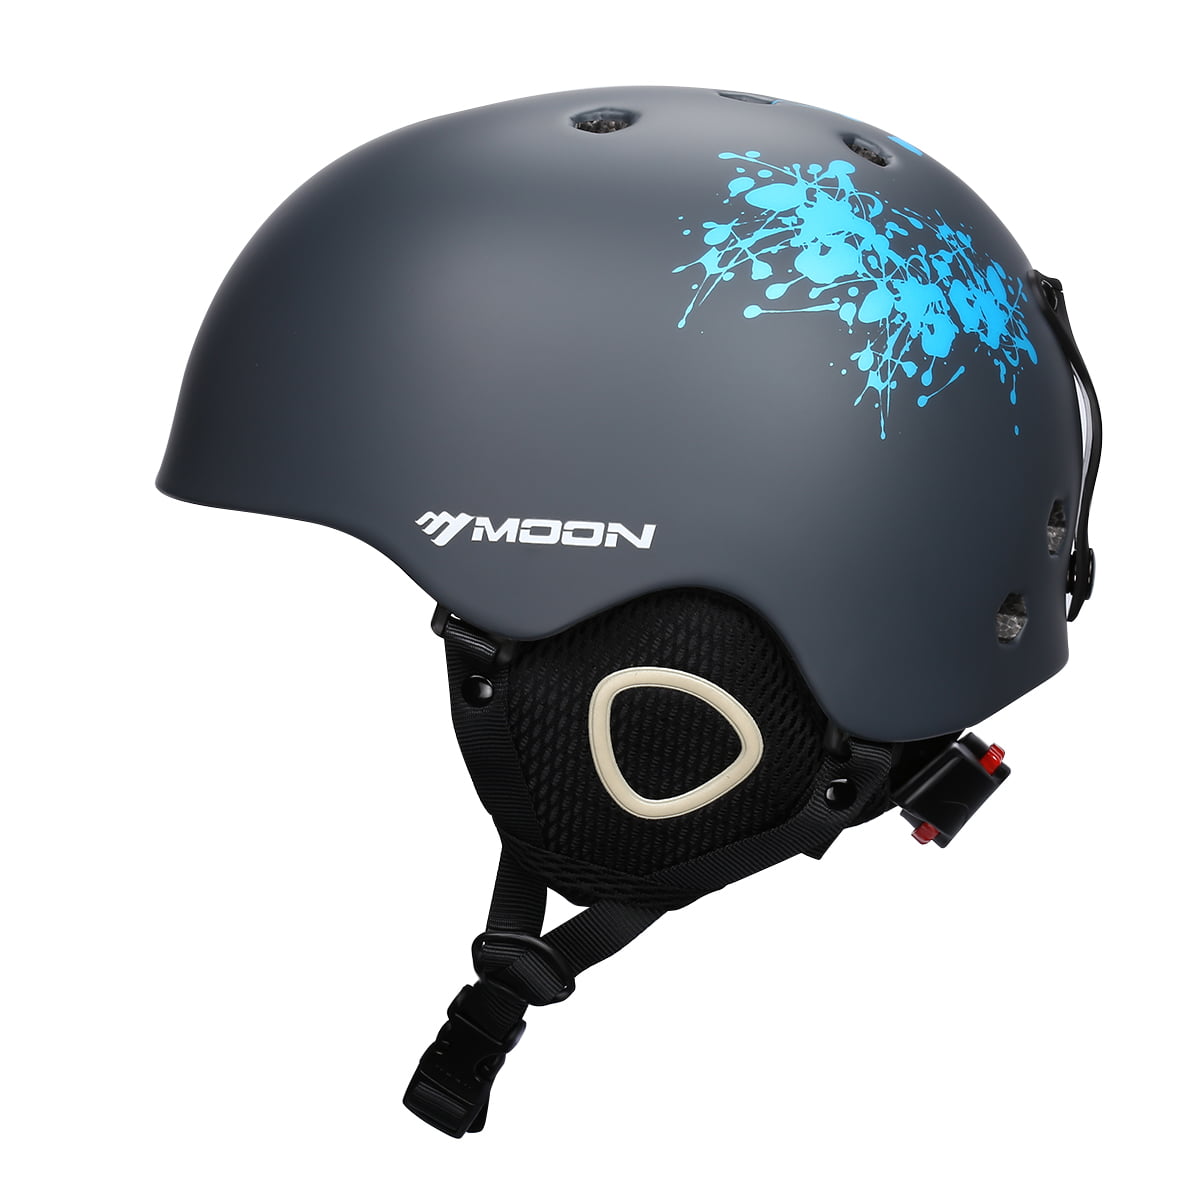 Helmet Ski Ski Helmet Integrally-Molded Skiing Helmet for Adult and Kids Snow Helmet Safety Skateboard Ski Snowboard Helmet Color : 4 Gray Line Flower, Size : XL 61 64cm 